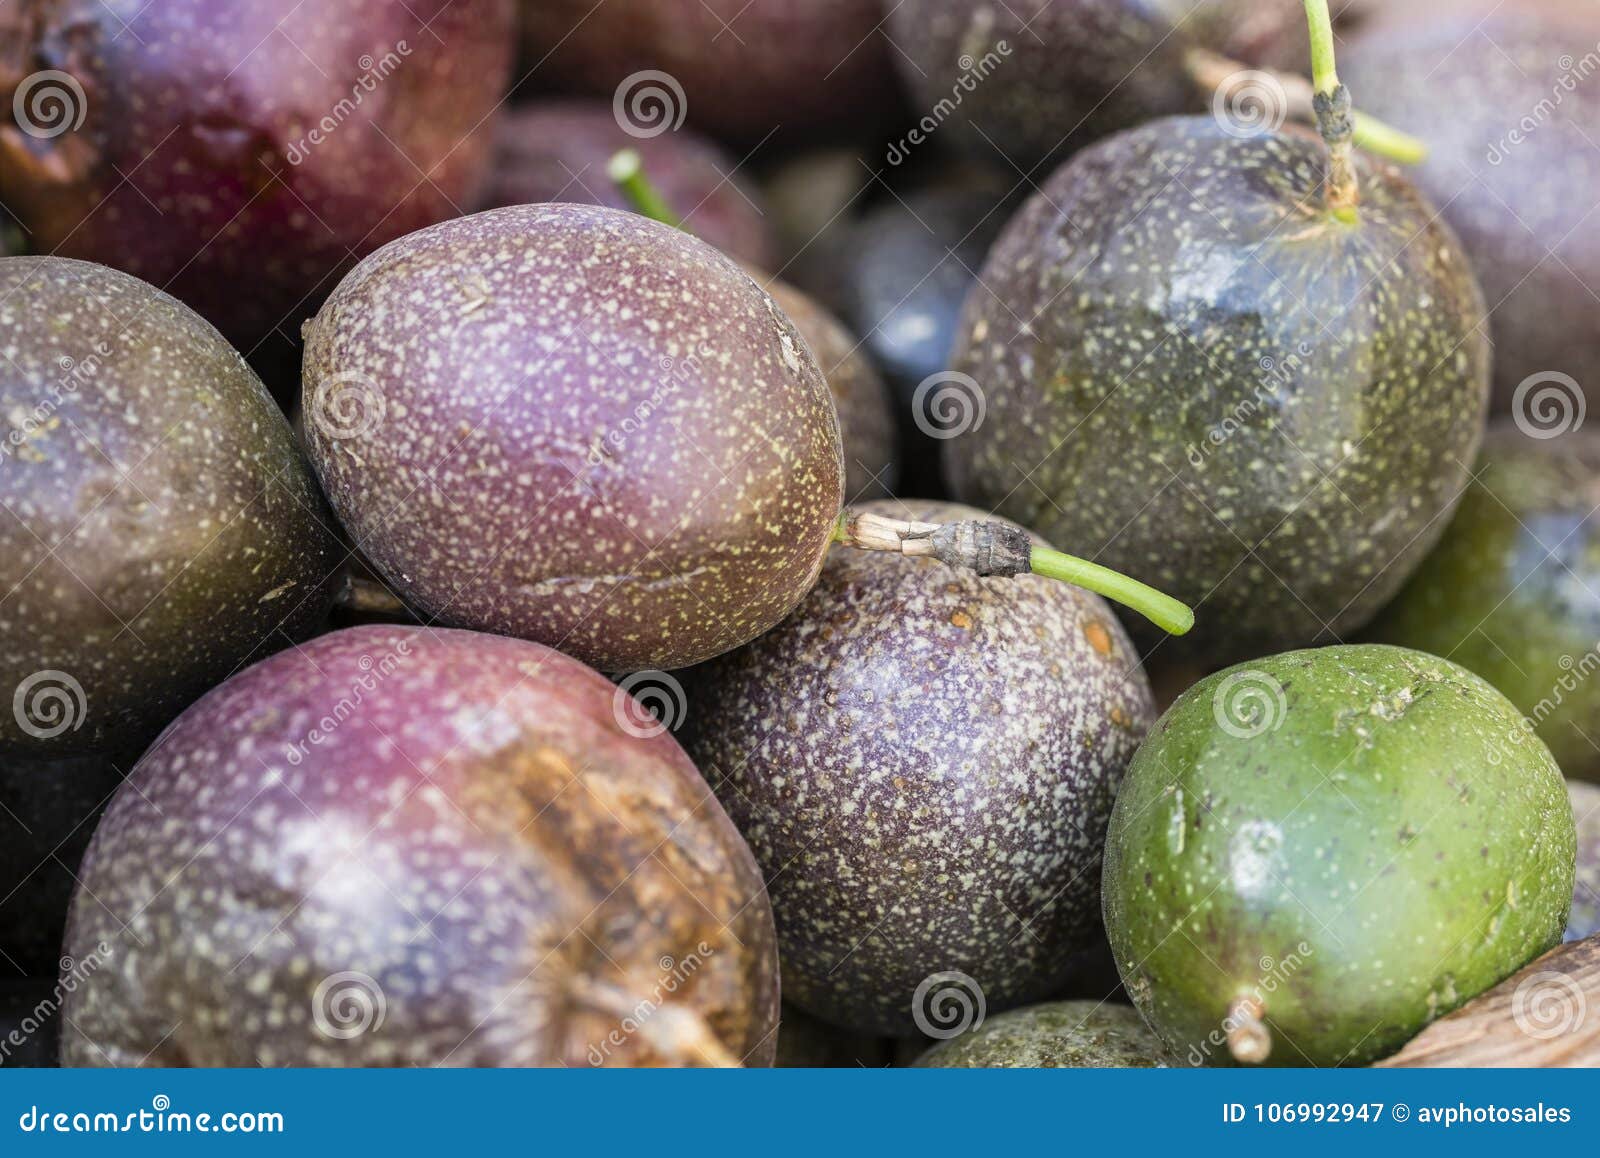 purple passion fruit background, closeup.